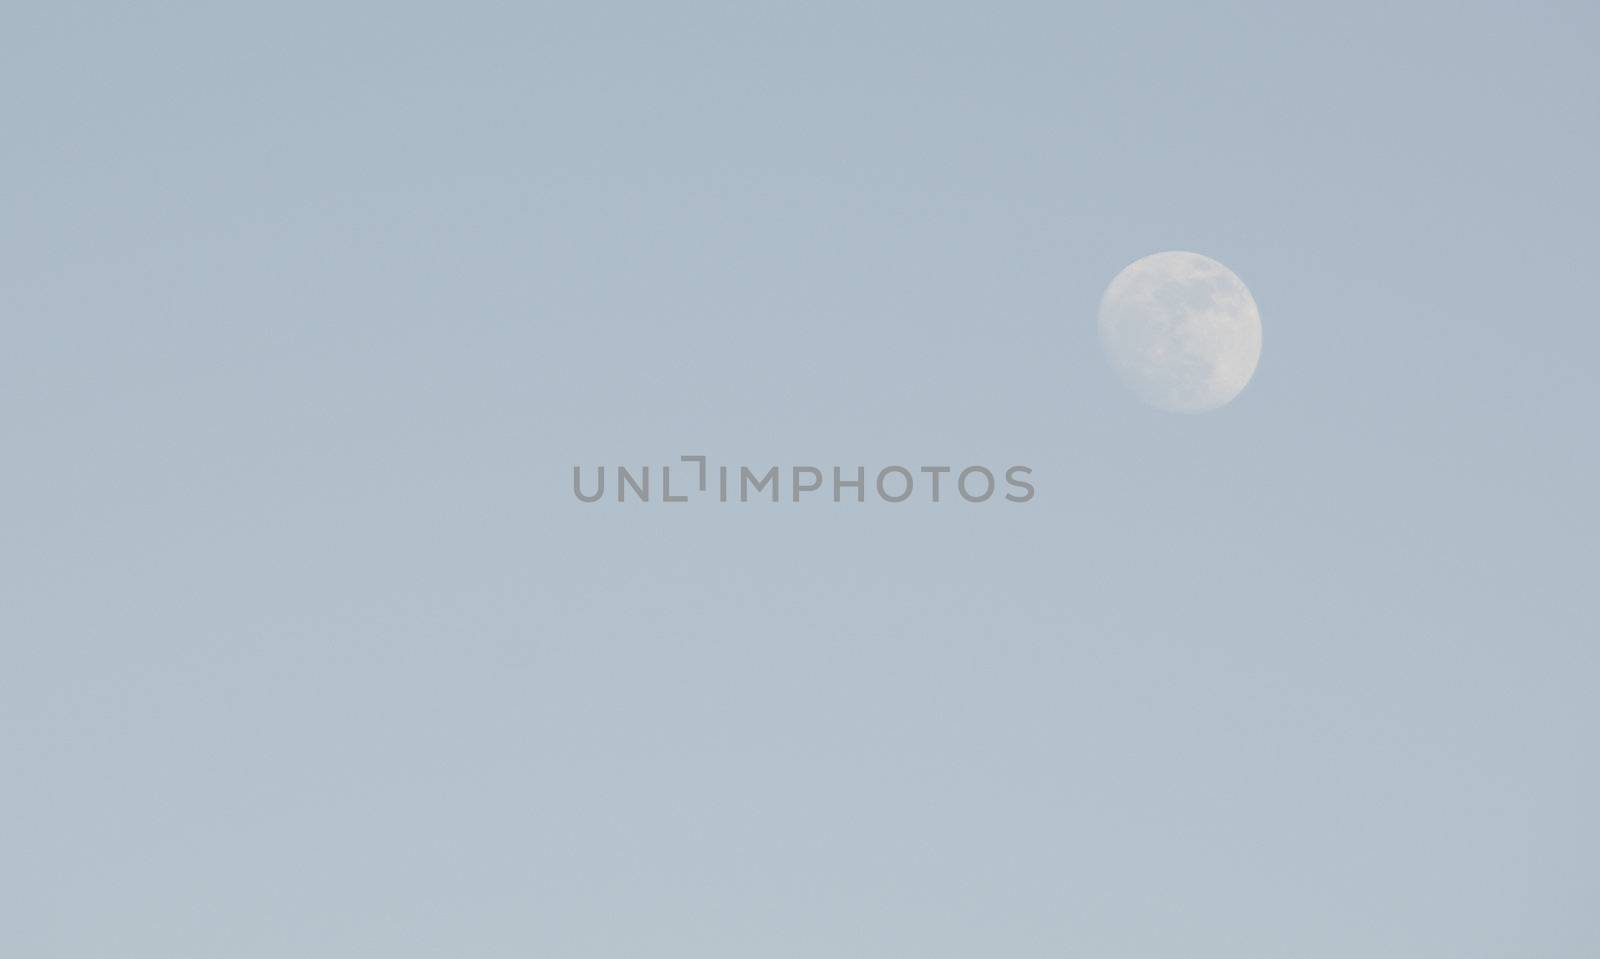 Moon on blue sky by Arrxxx